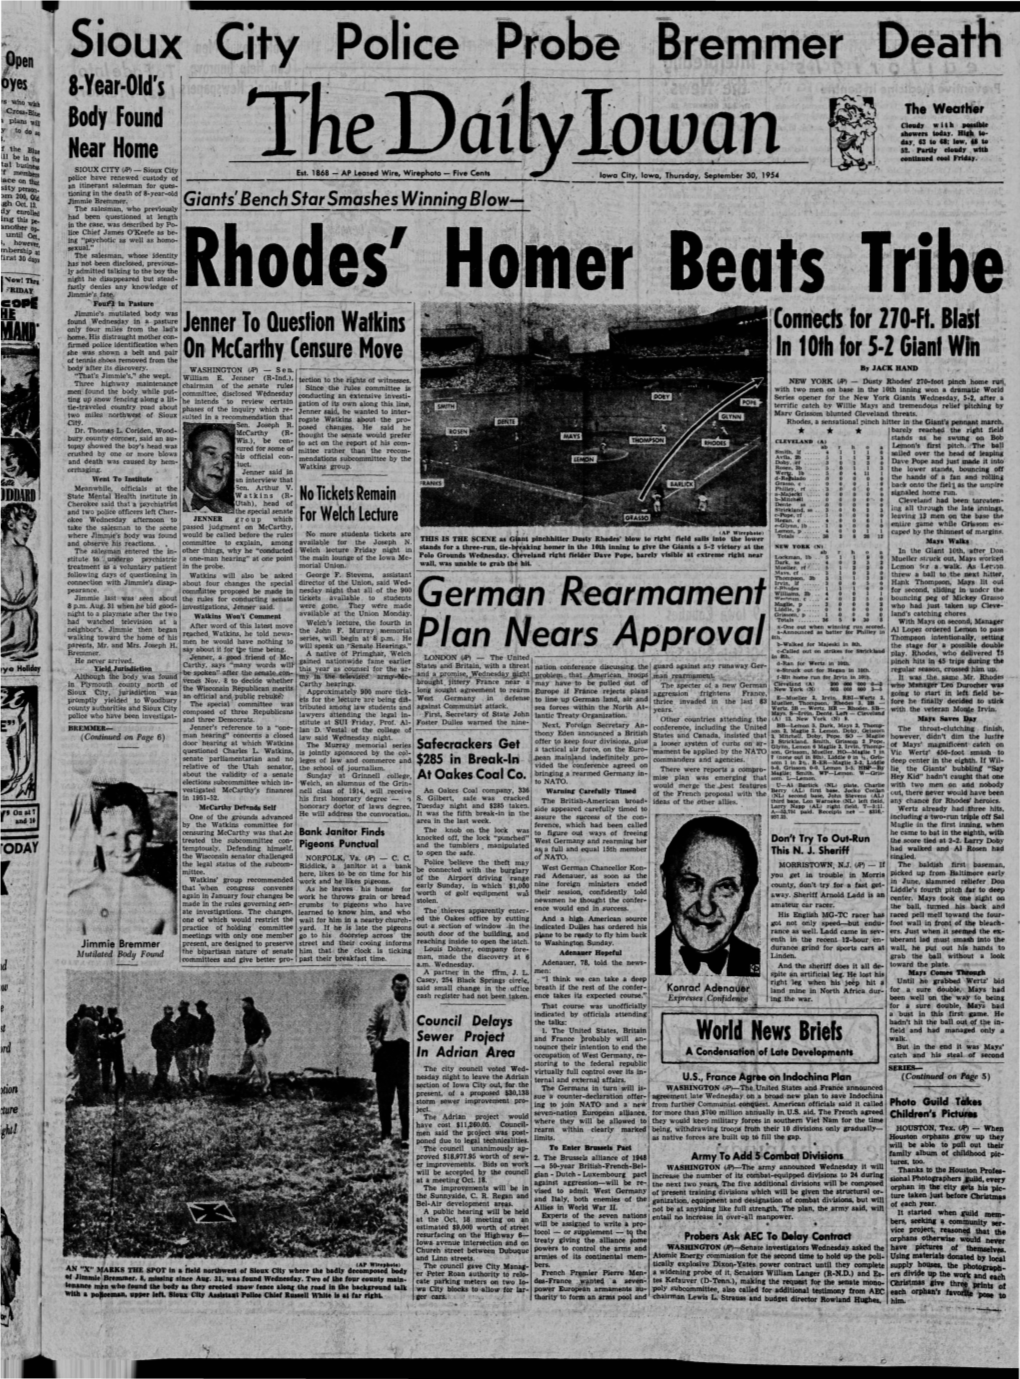 Daily Iowan (Iowa City, Iowa), 1954-09-30